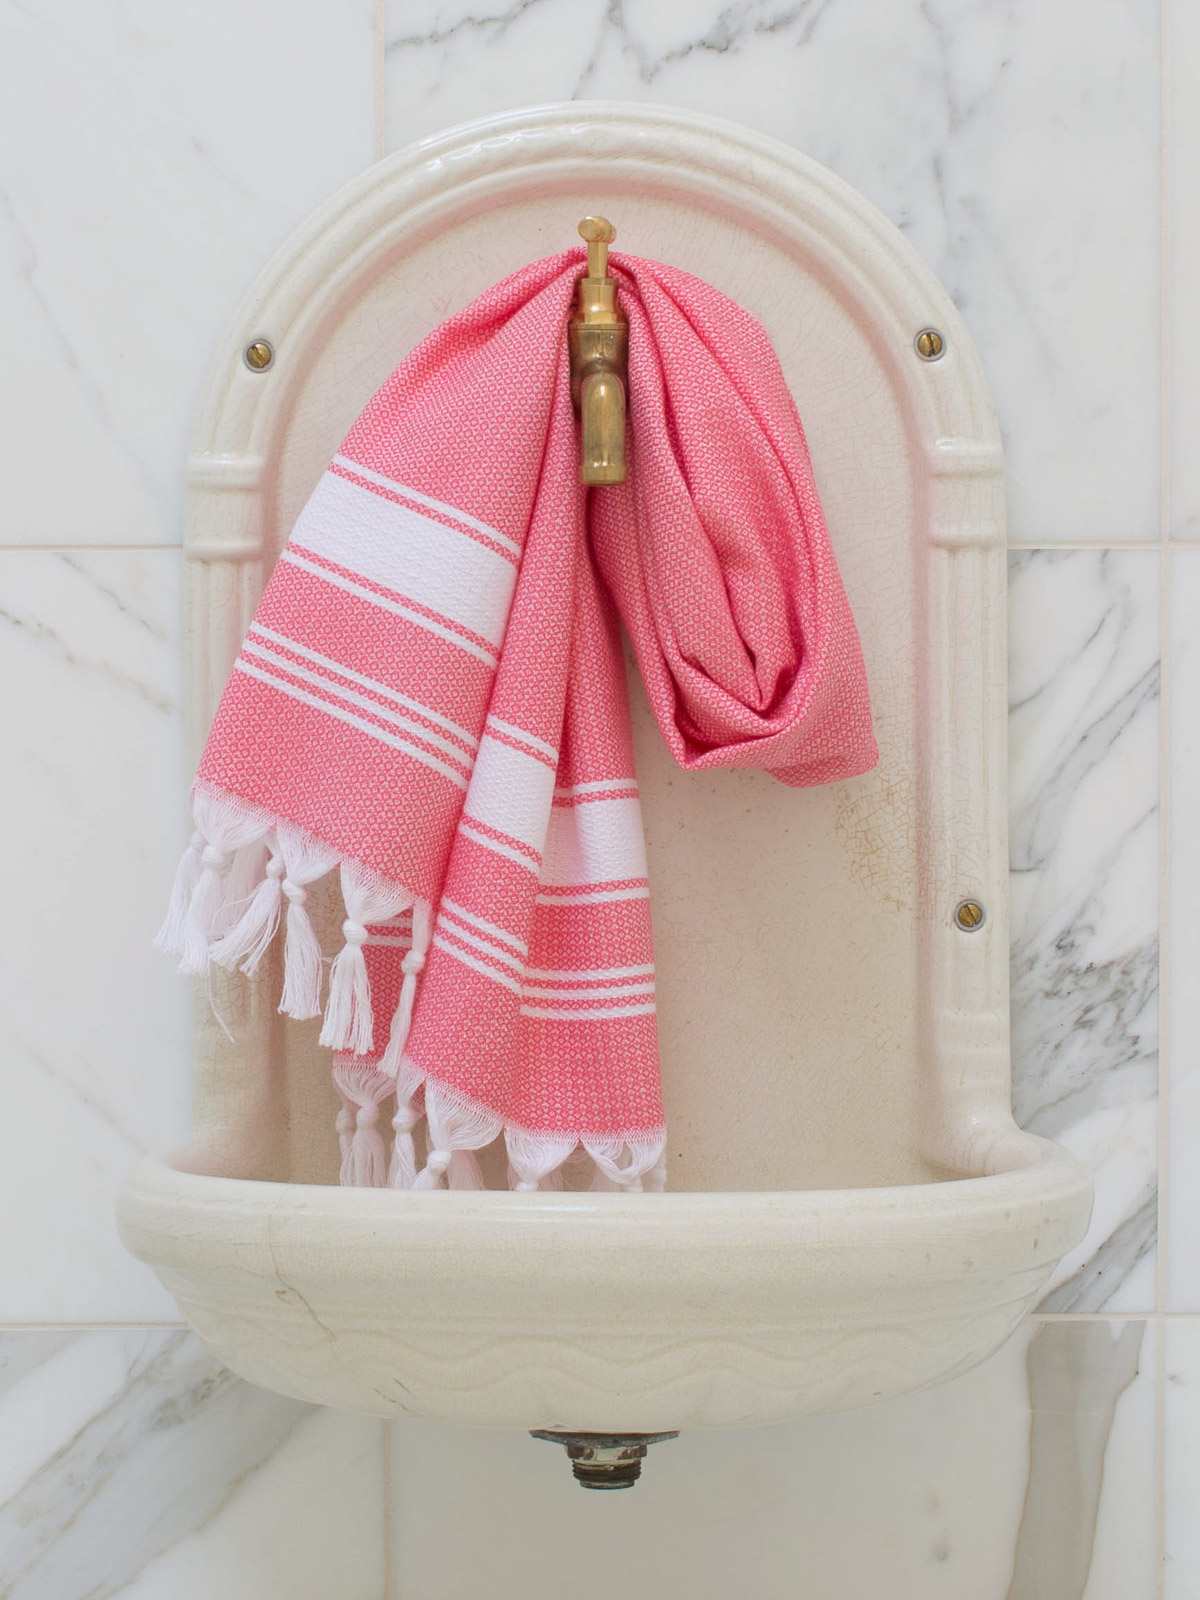 asciugamano hamam rosa confetto/bianco